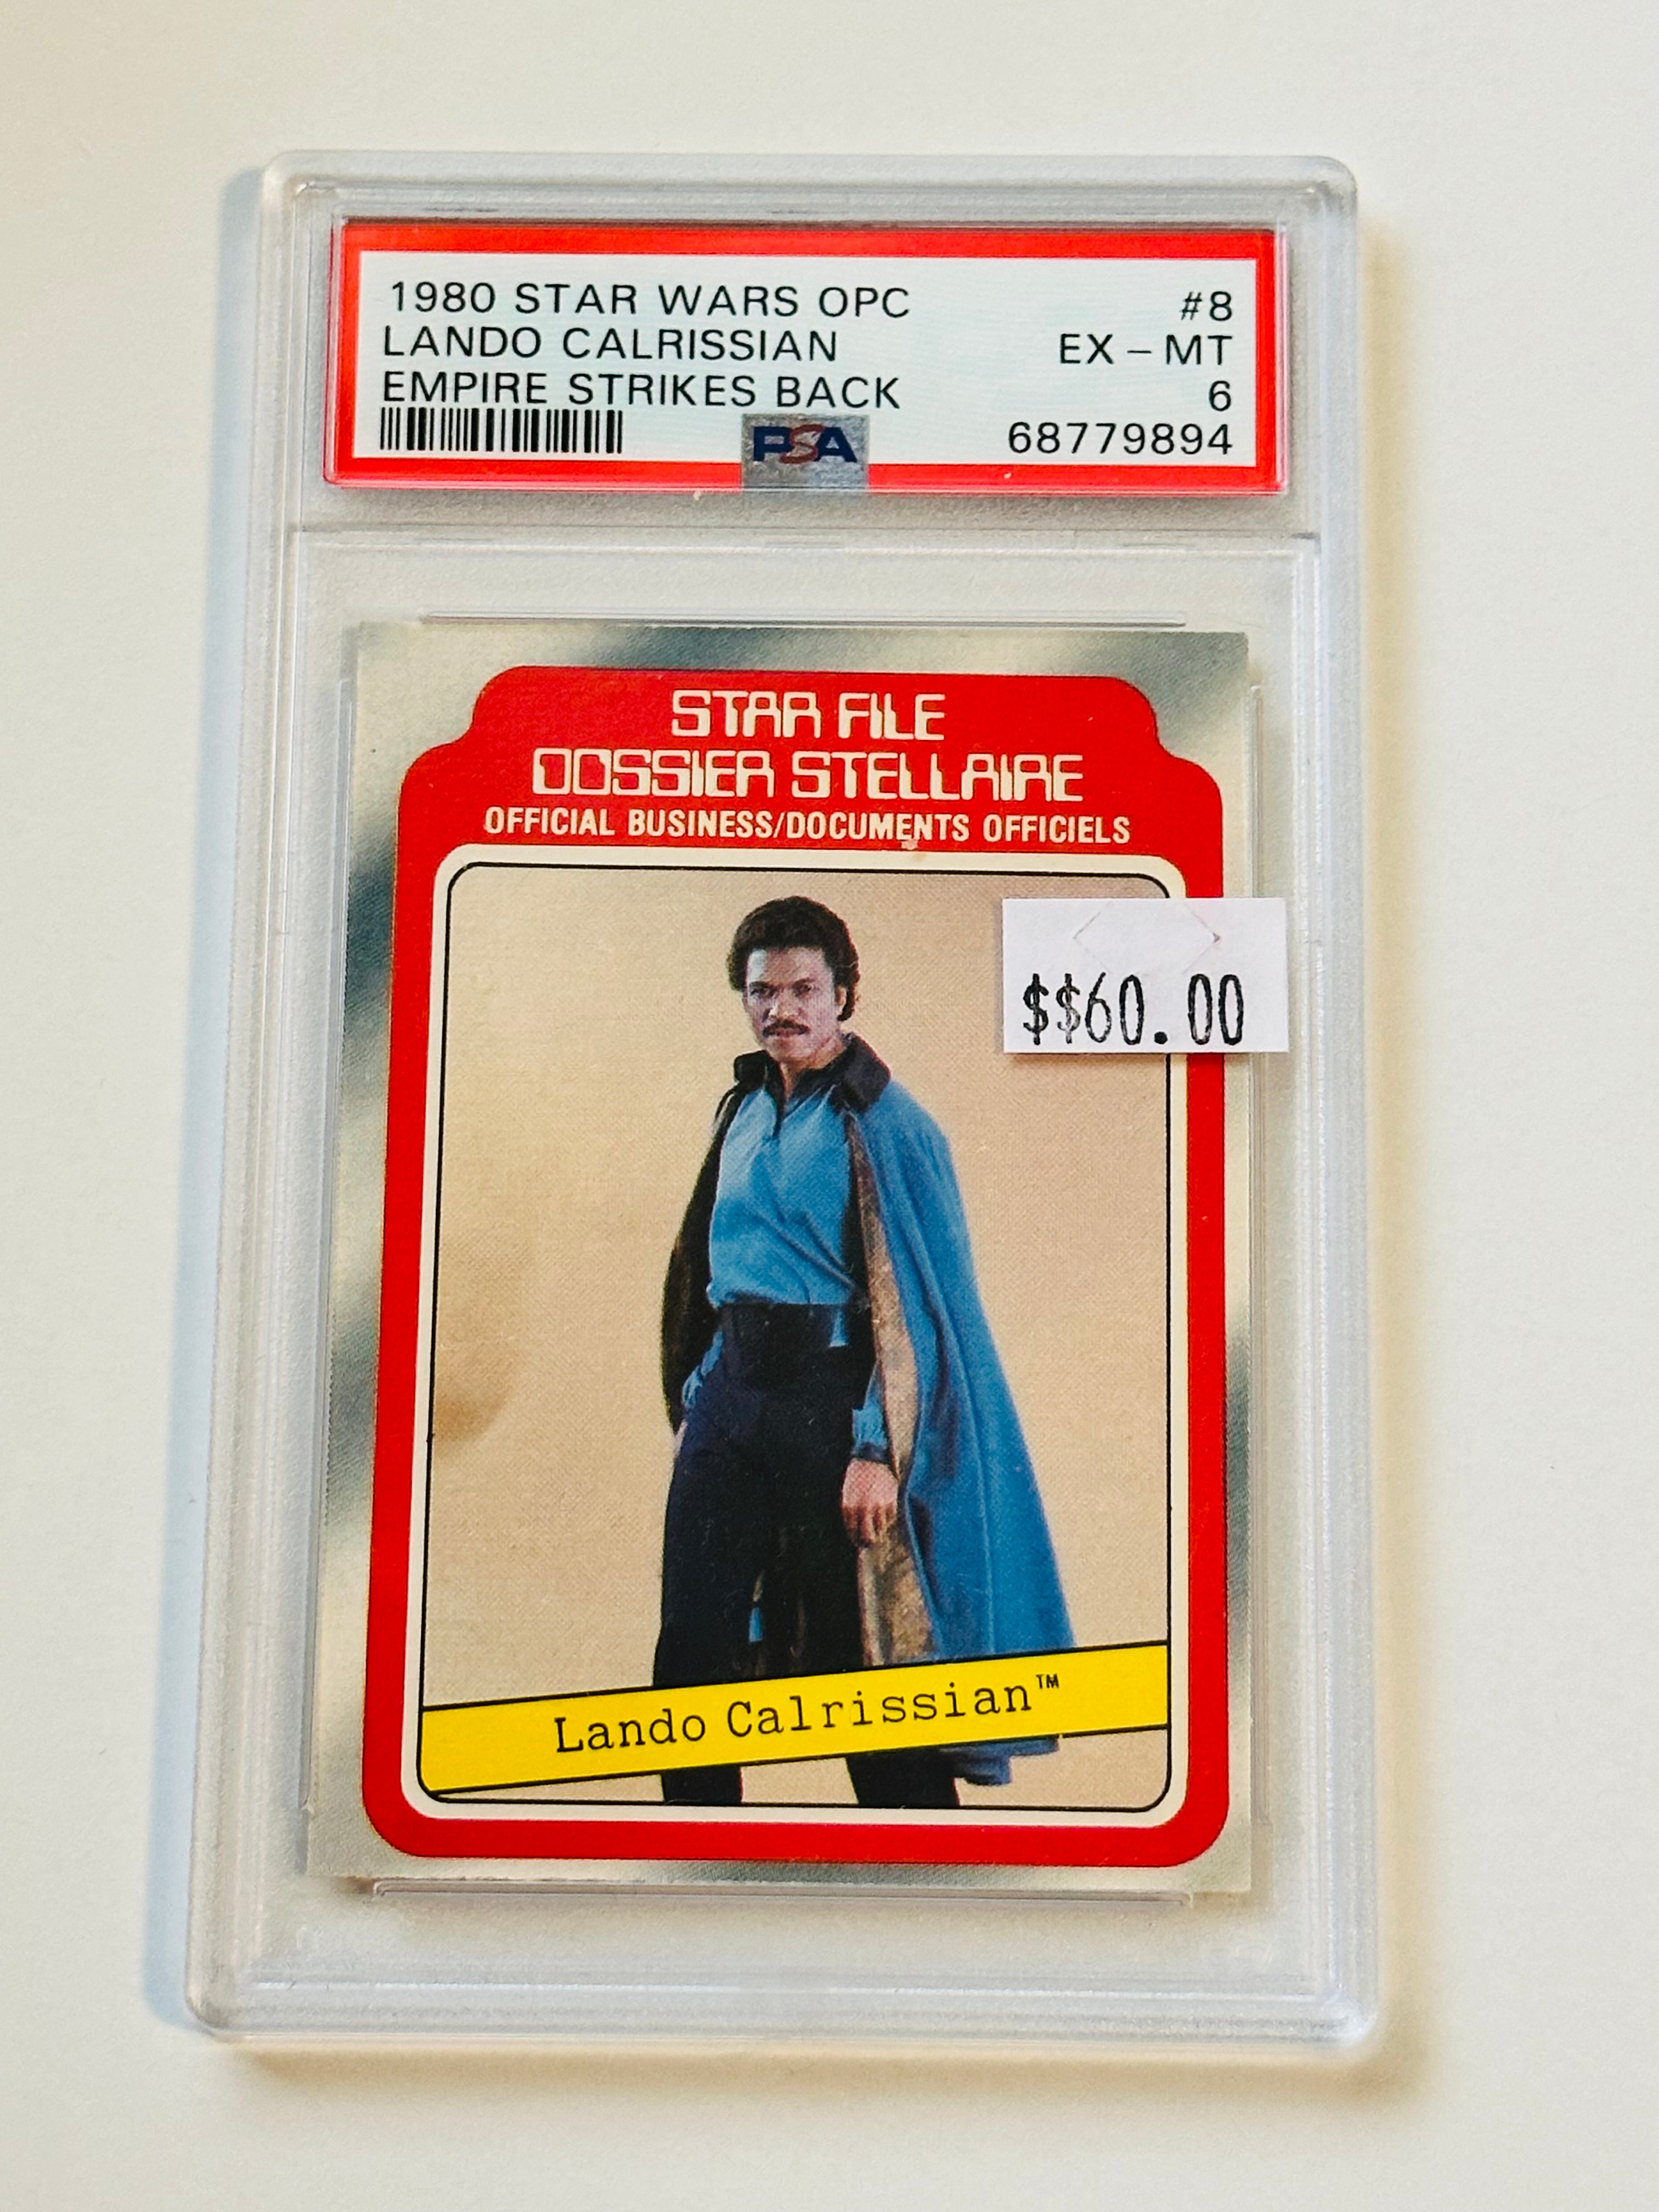 Star Wars Lando Opc rare PSA graded card 1980